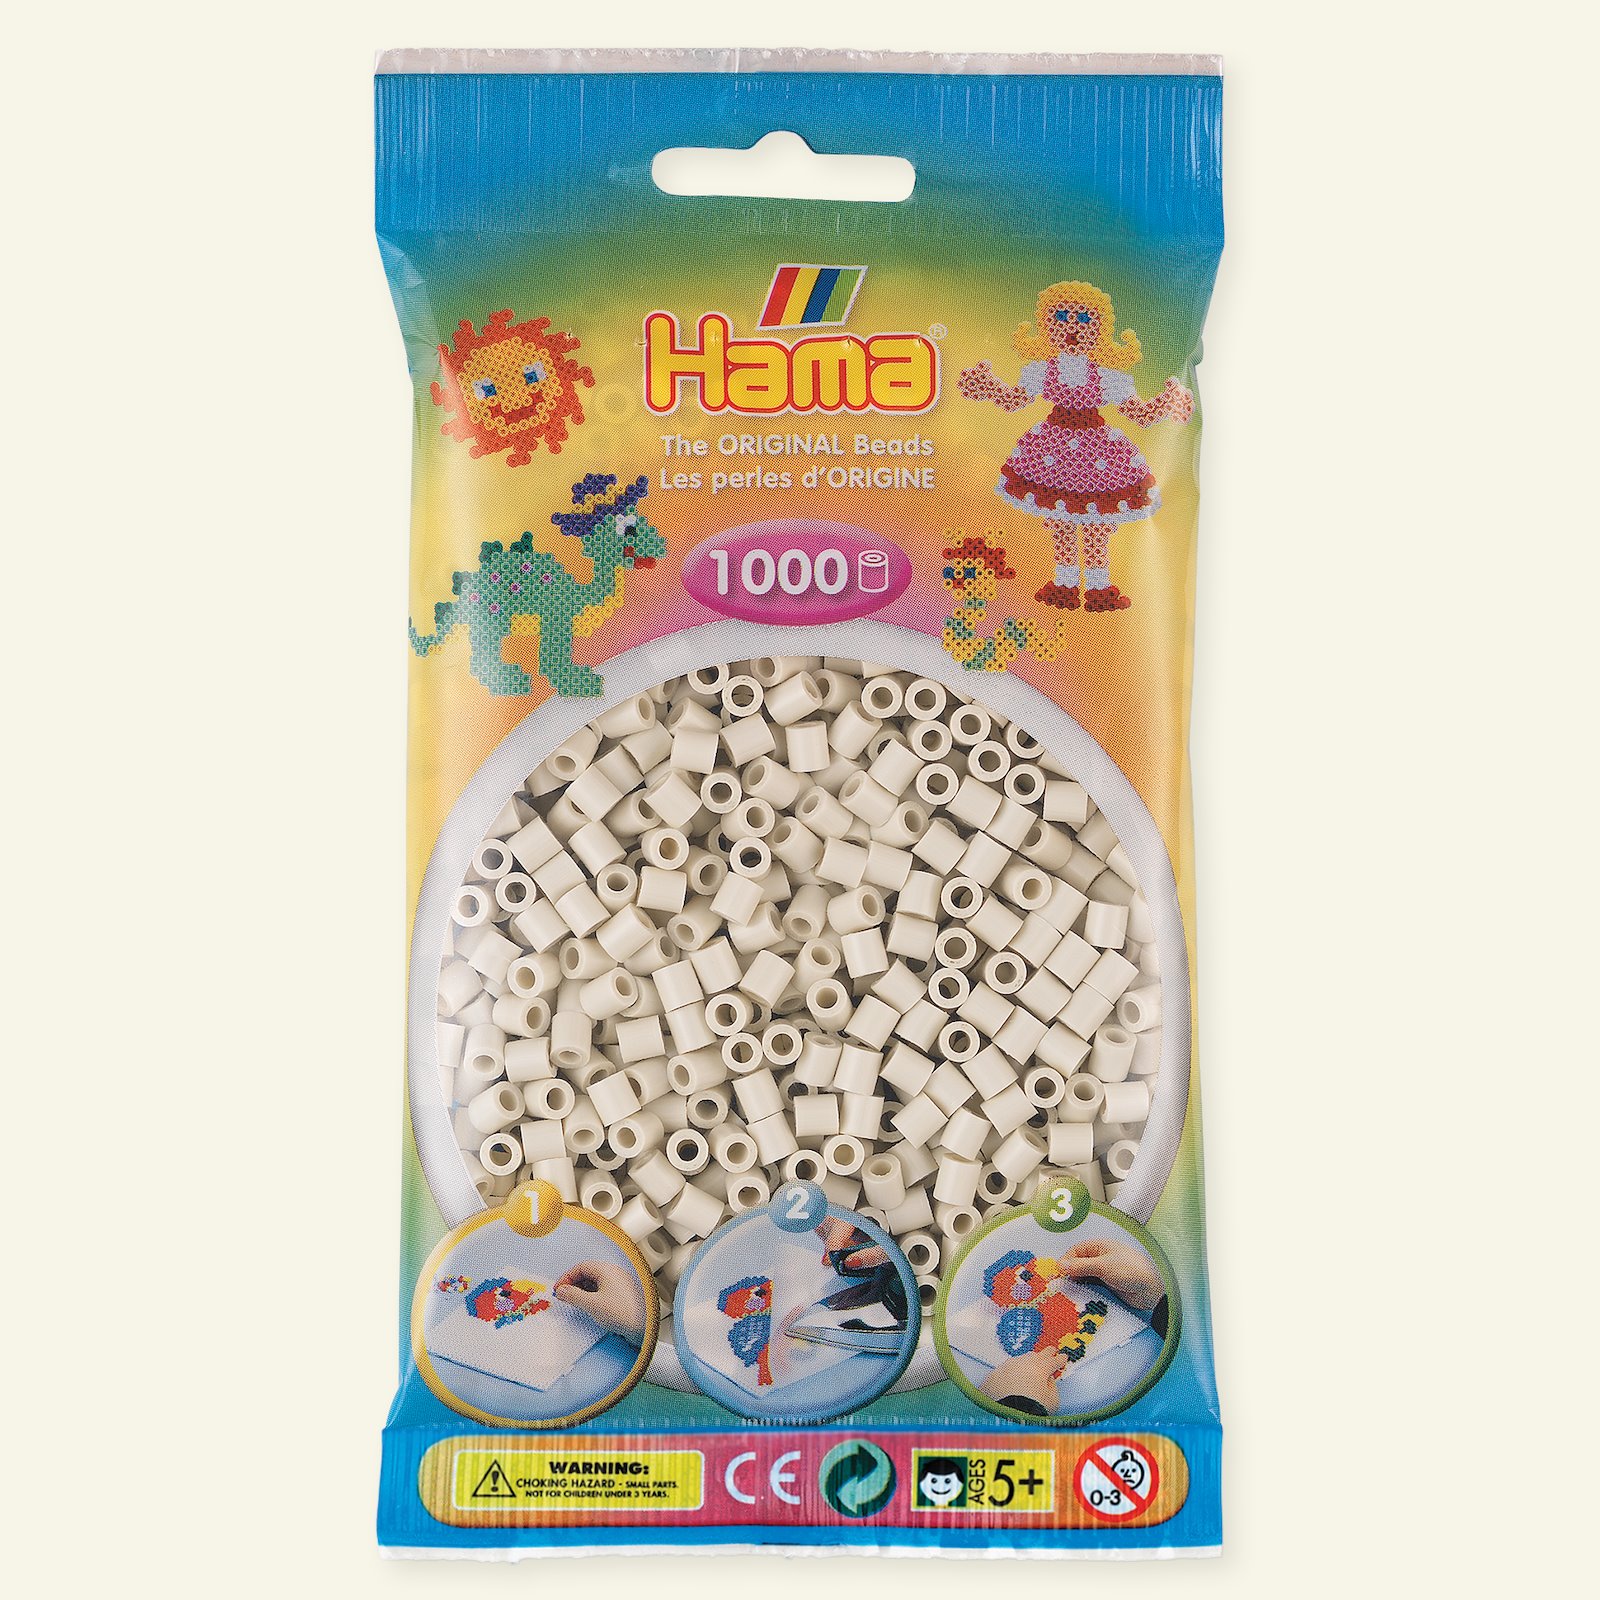 HAMA midi fuse beads 1000pcs kit 28352_pack